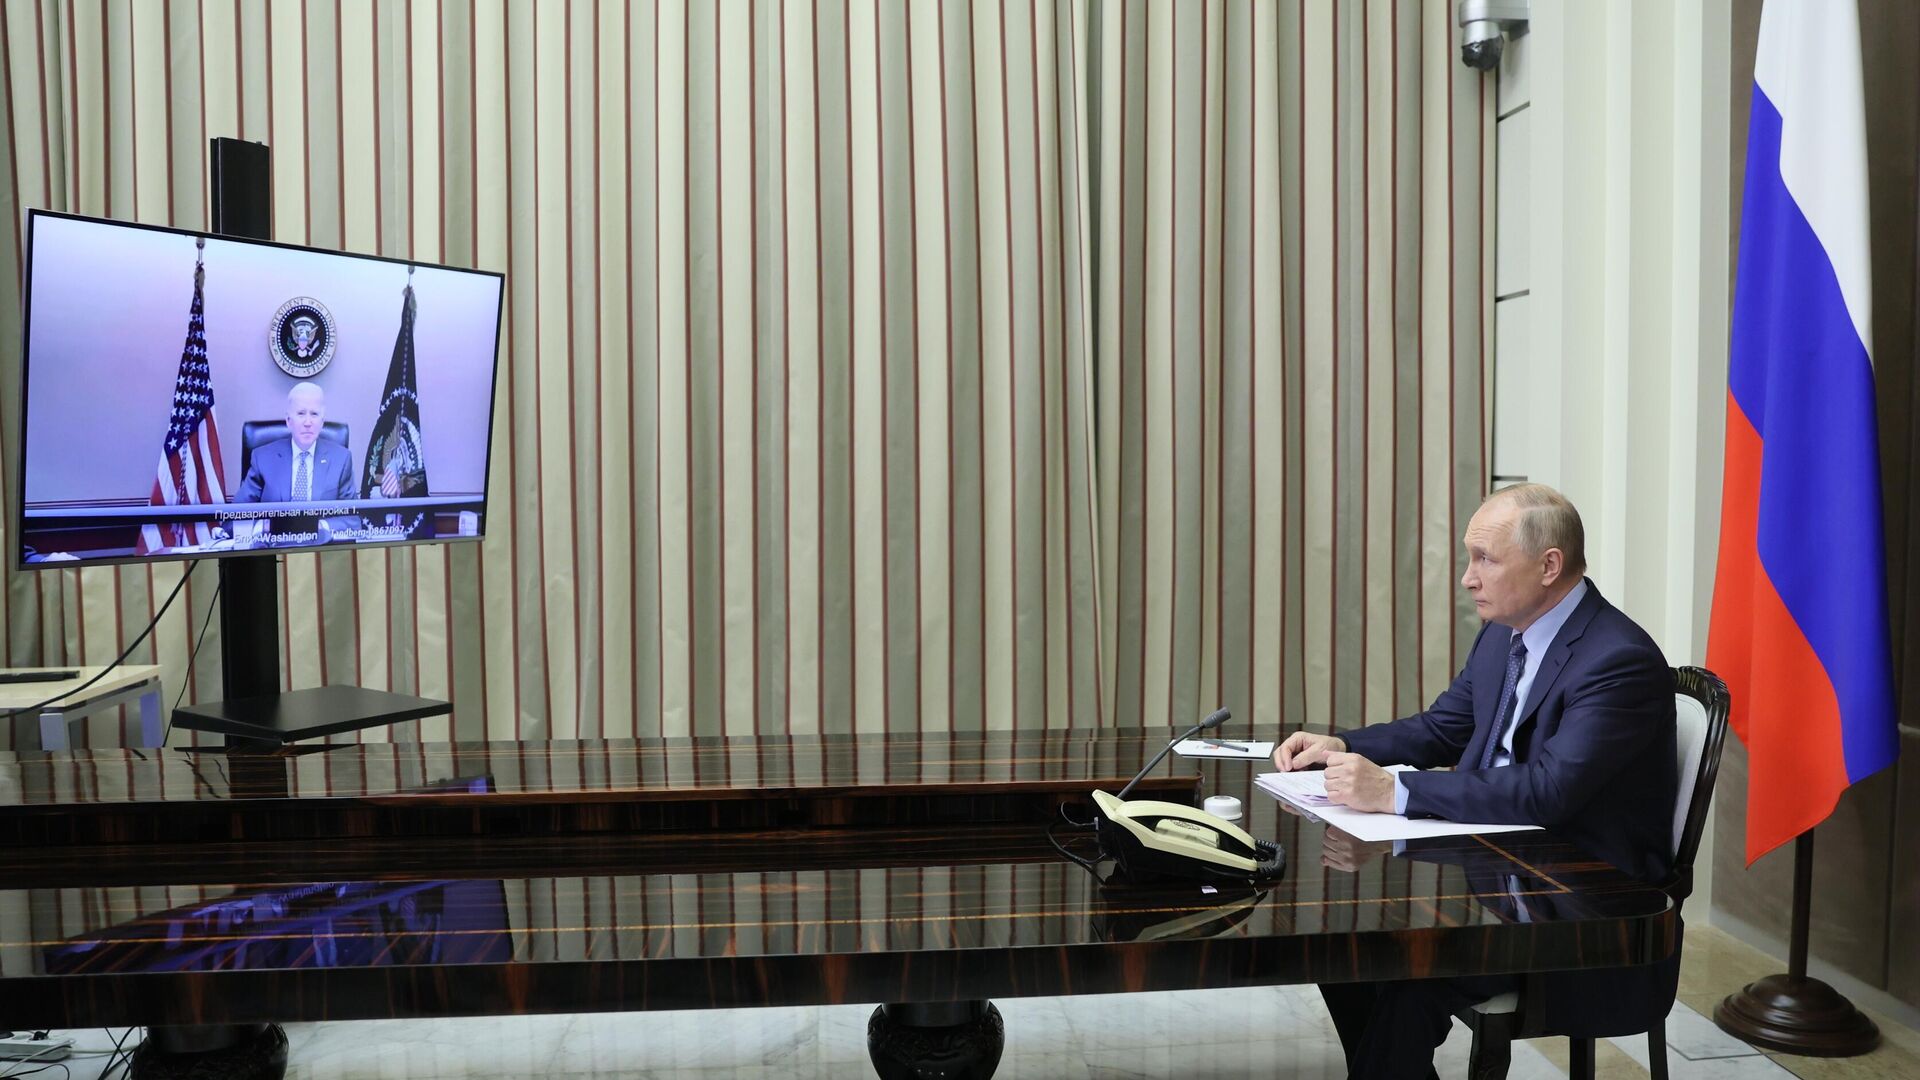 Krievijas un ASV prezidenti Vladimirs Putins un Džo Baidens, tiekoties ar video starpniecību, pārrunāja Ukrainas jautājumu un drošības mazināšanos. - Sputnik Latvija, 1920, 08.12.2021